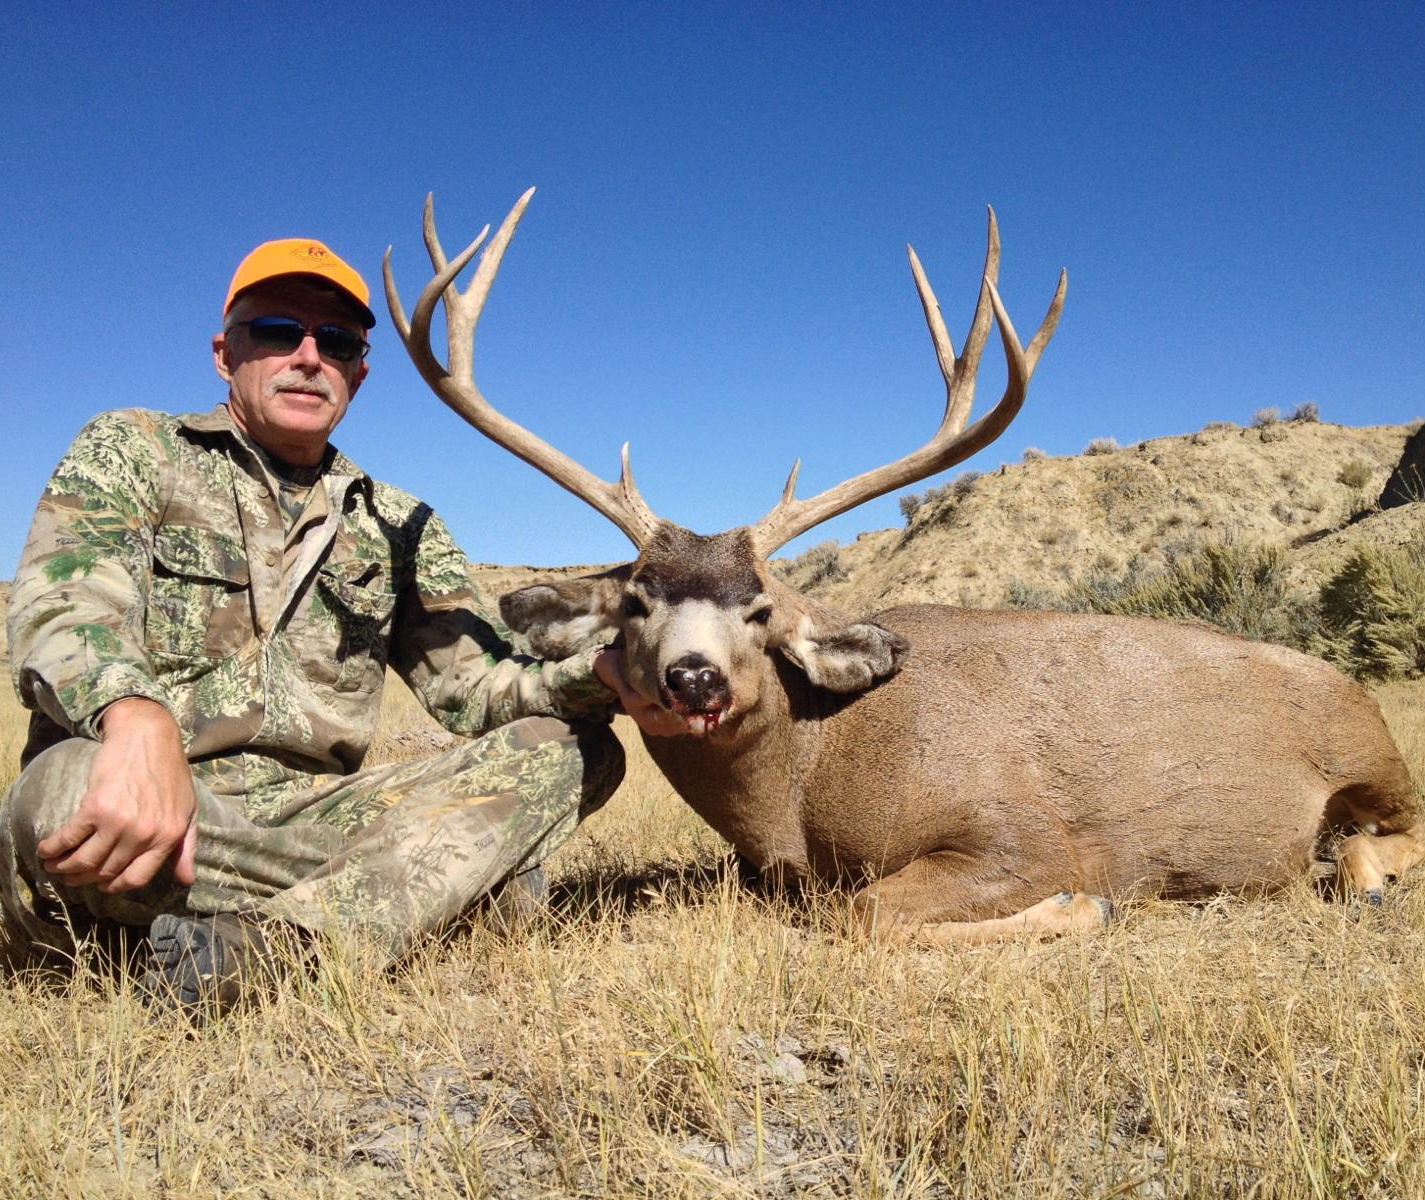 Wyoming Hunting Season Photo Roundup Wyoming Hunting News